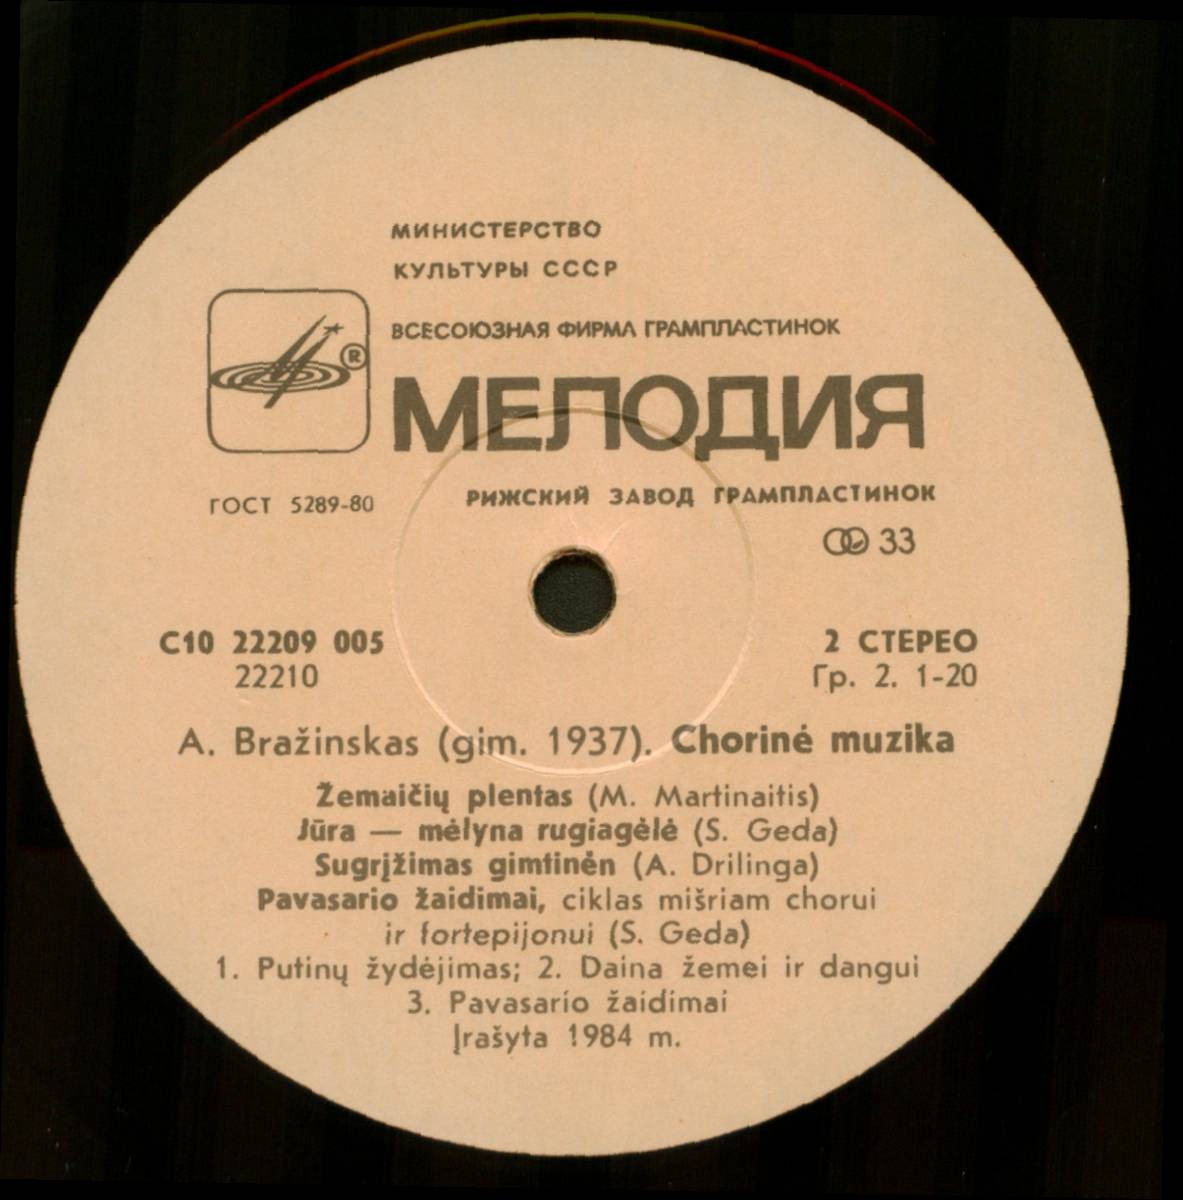 Альгимантас БРАЖИНСКАС (1937). Хоровая музыка (на литовском языке)